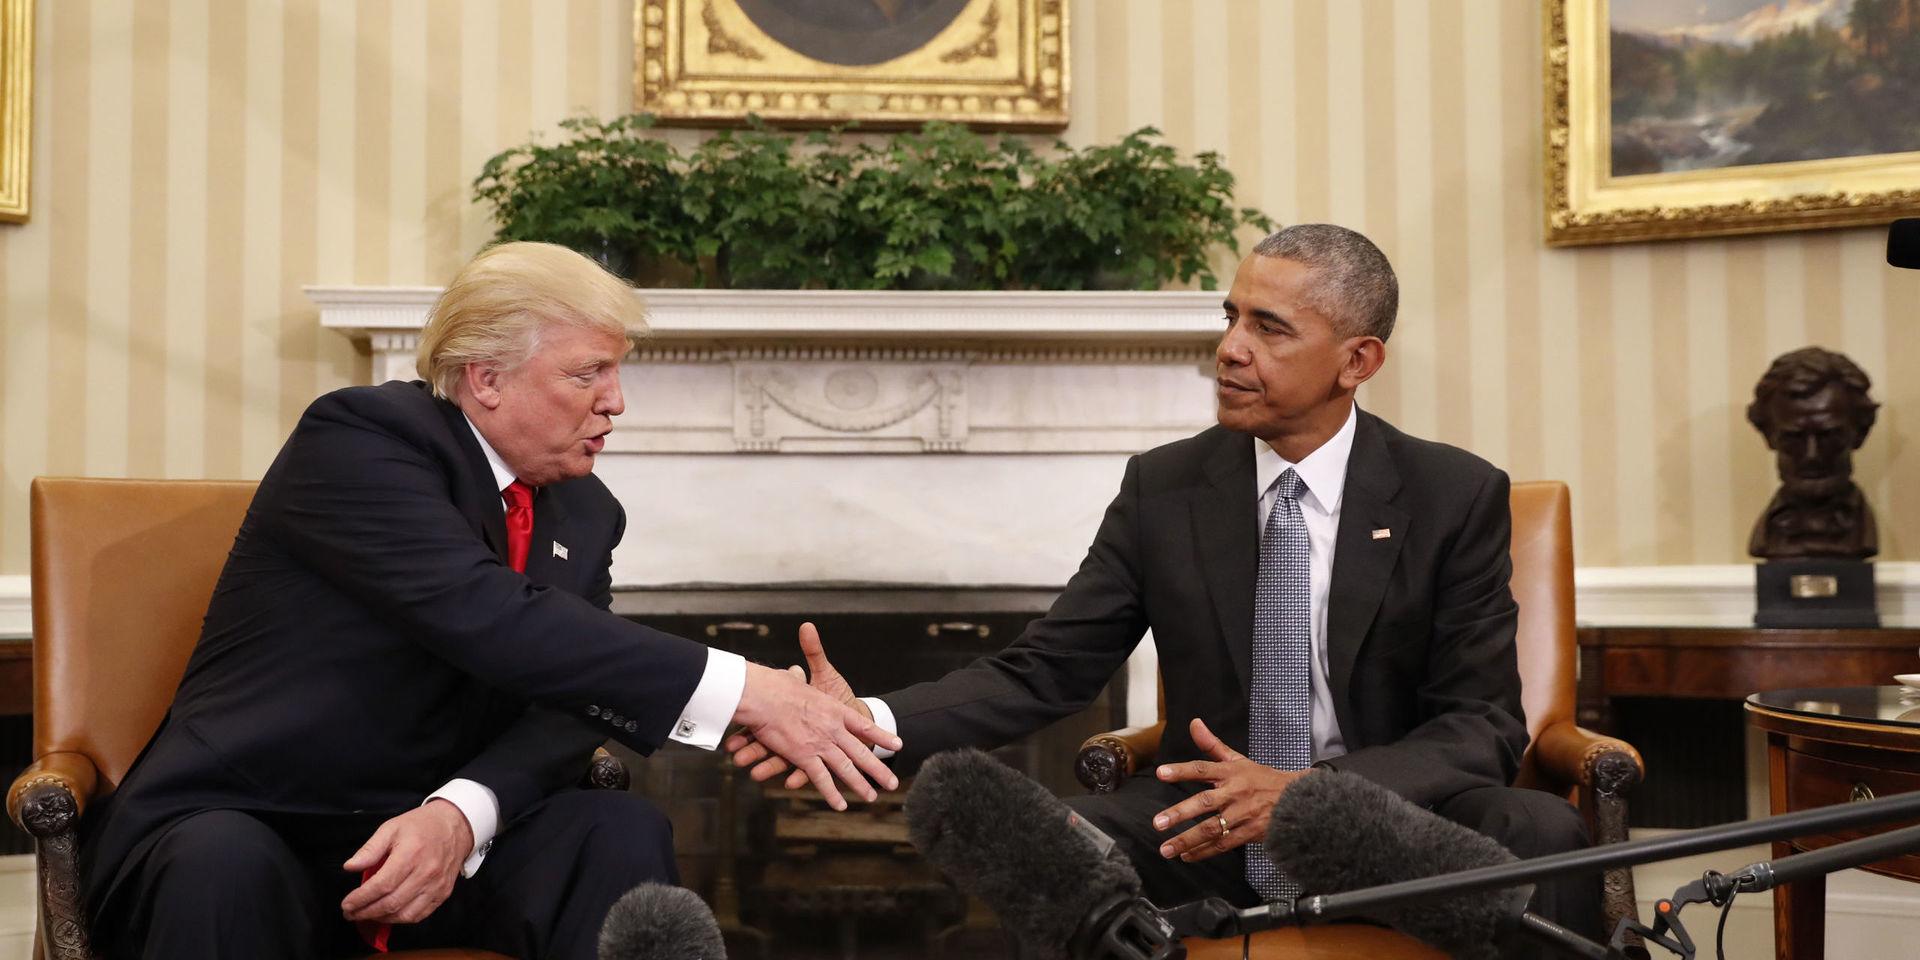 Den då tillträdande presidenten Donald Trump skakar hand med den avgående Barack Obama. Fotot är taget i Vita huset några dagar efter valet i november 2016. 